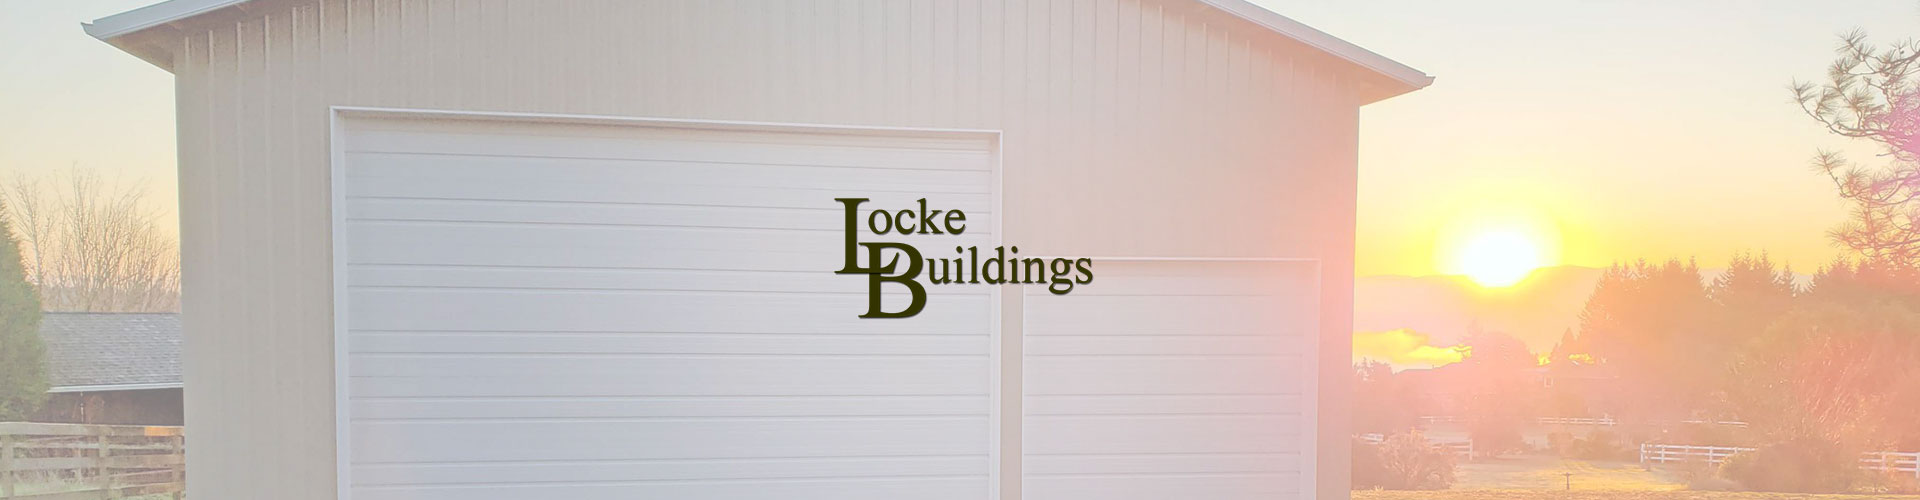 Locke Buildings banner